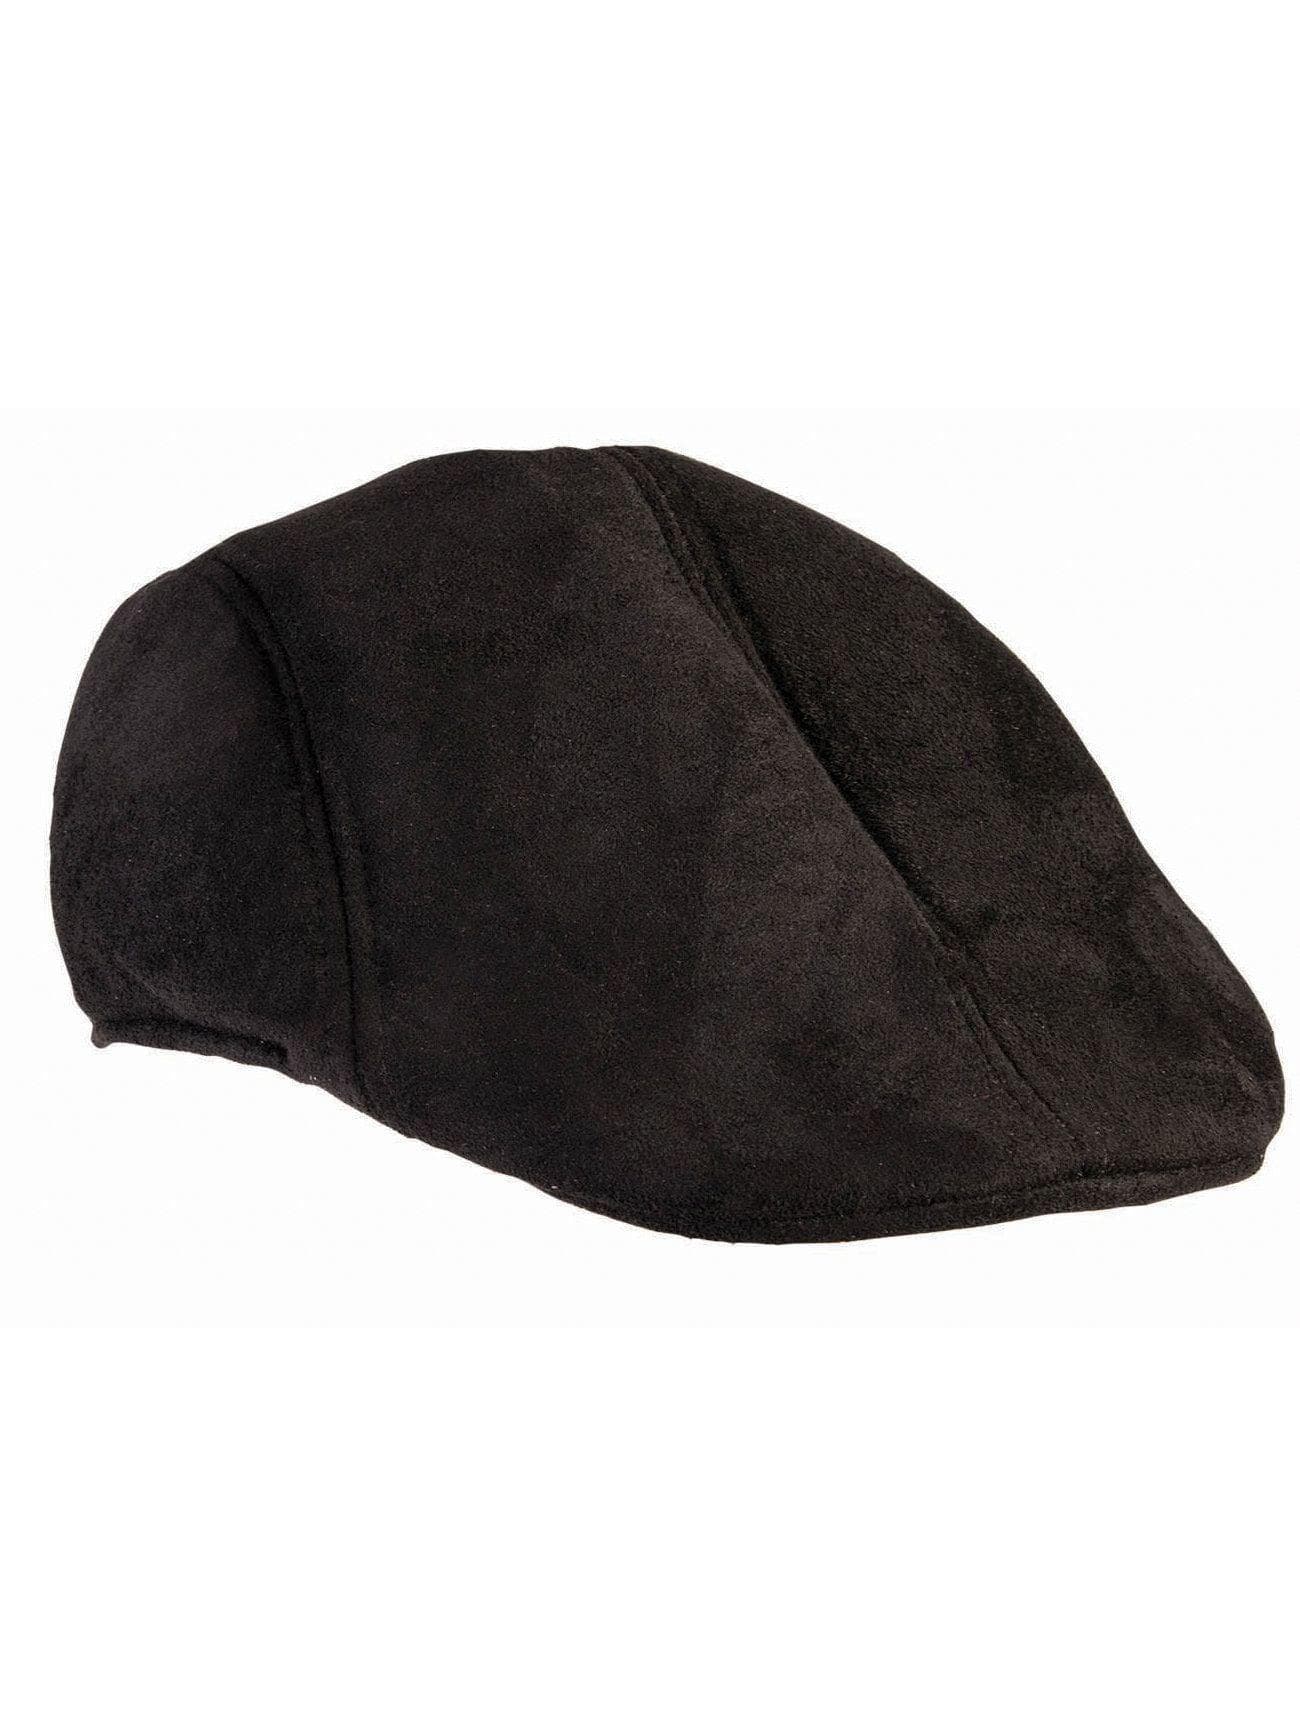 Adult Black Suede Cap - costumes.com